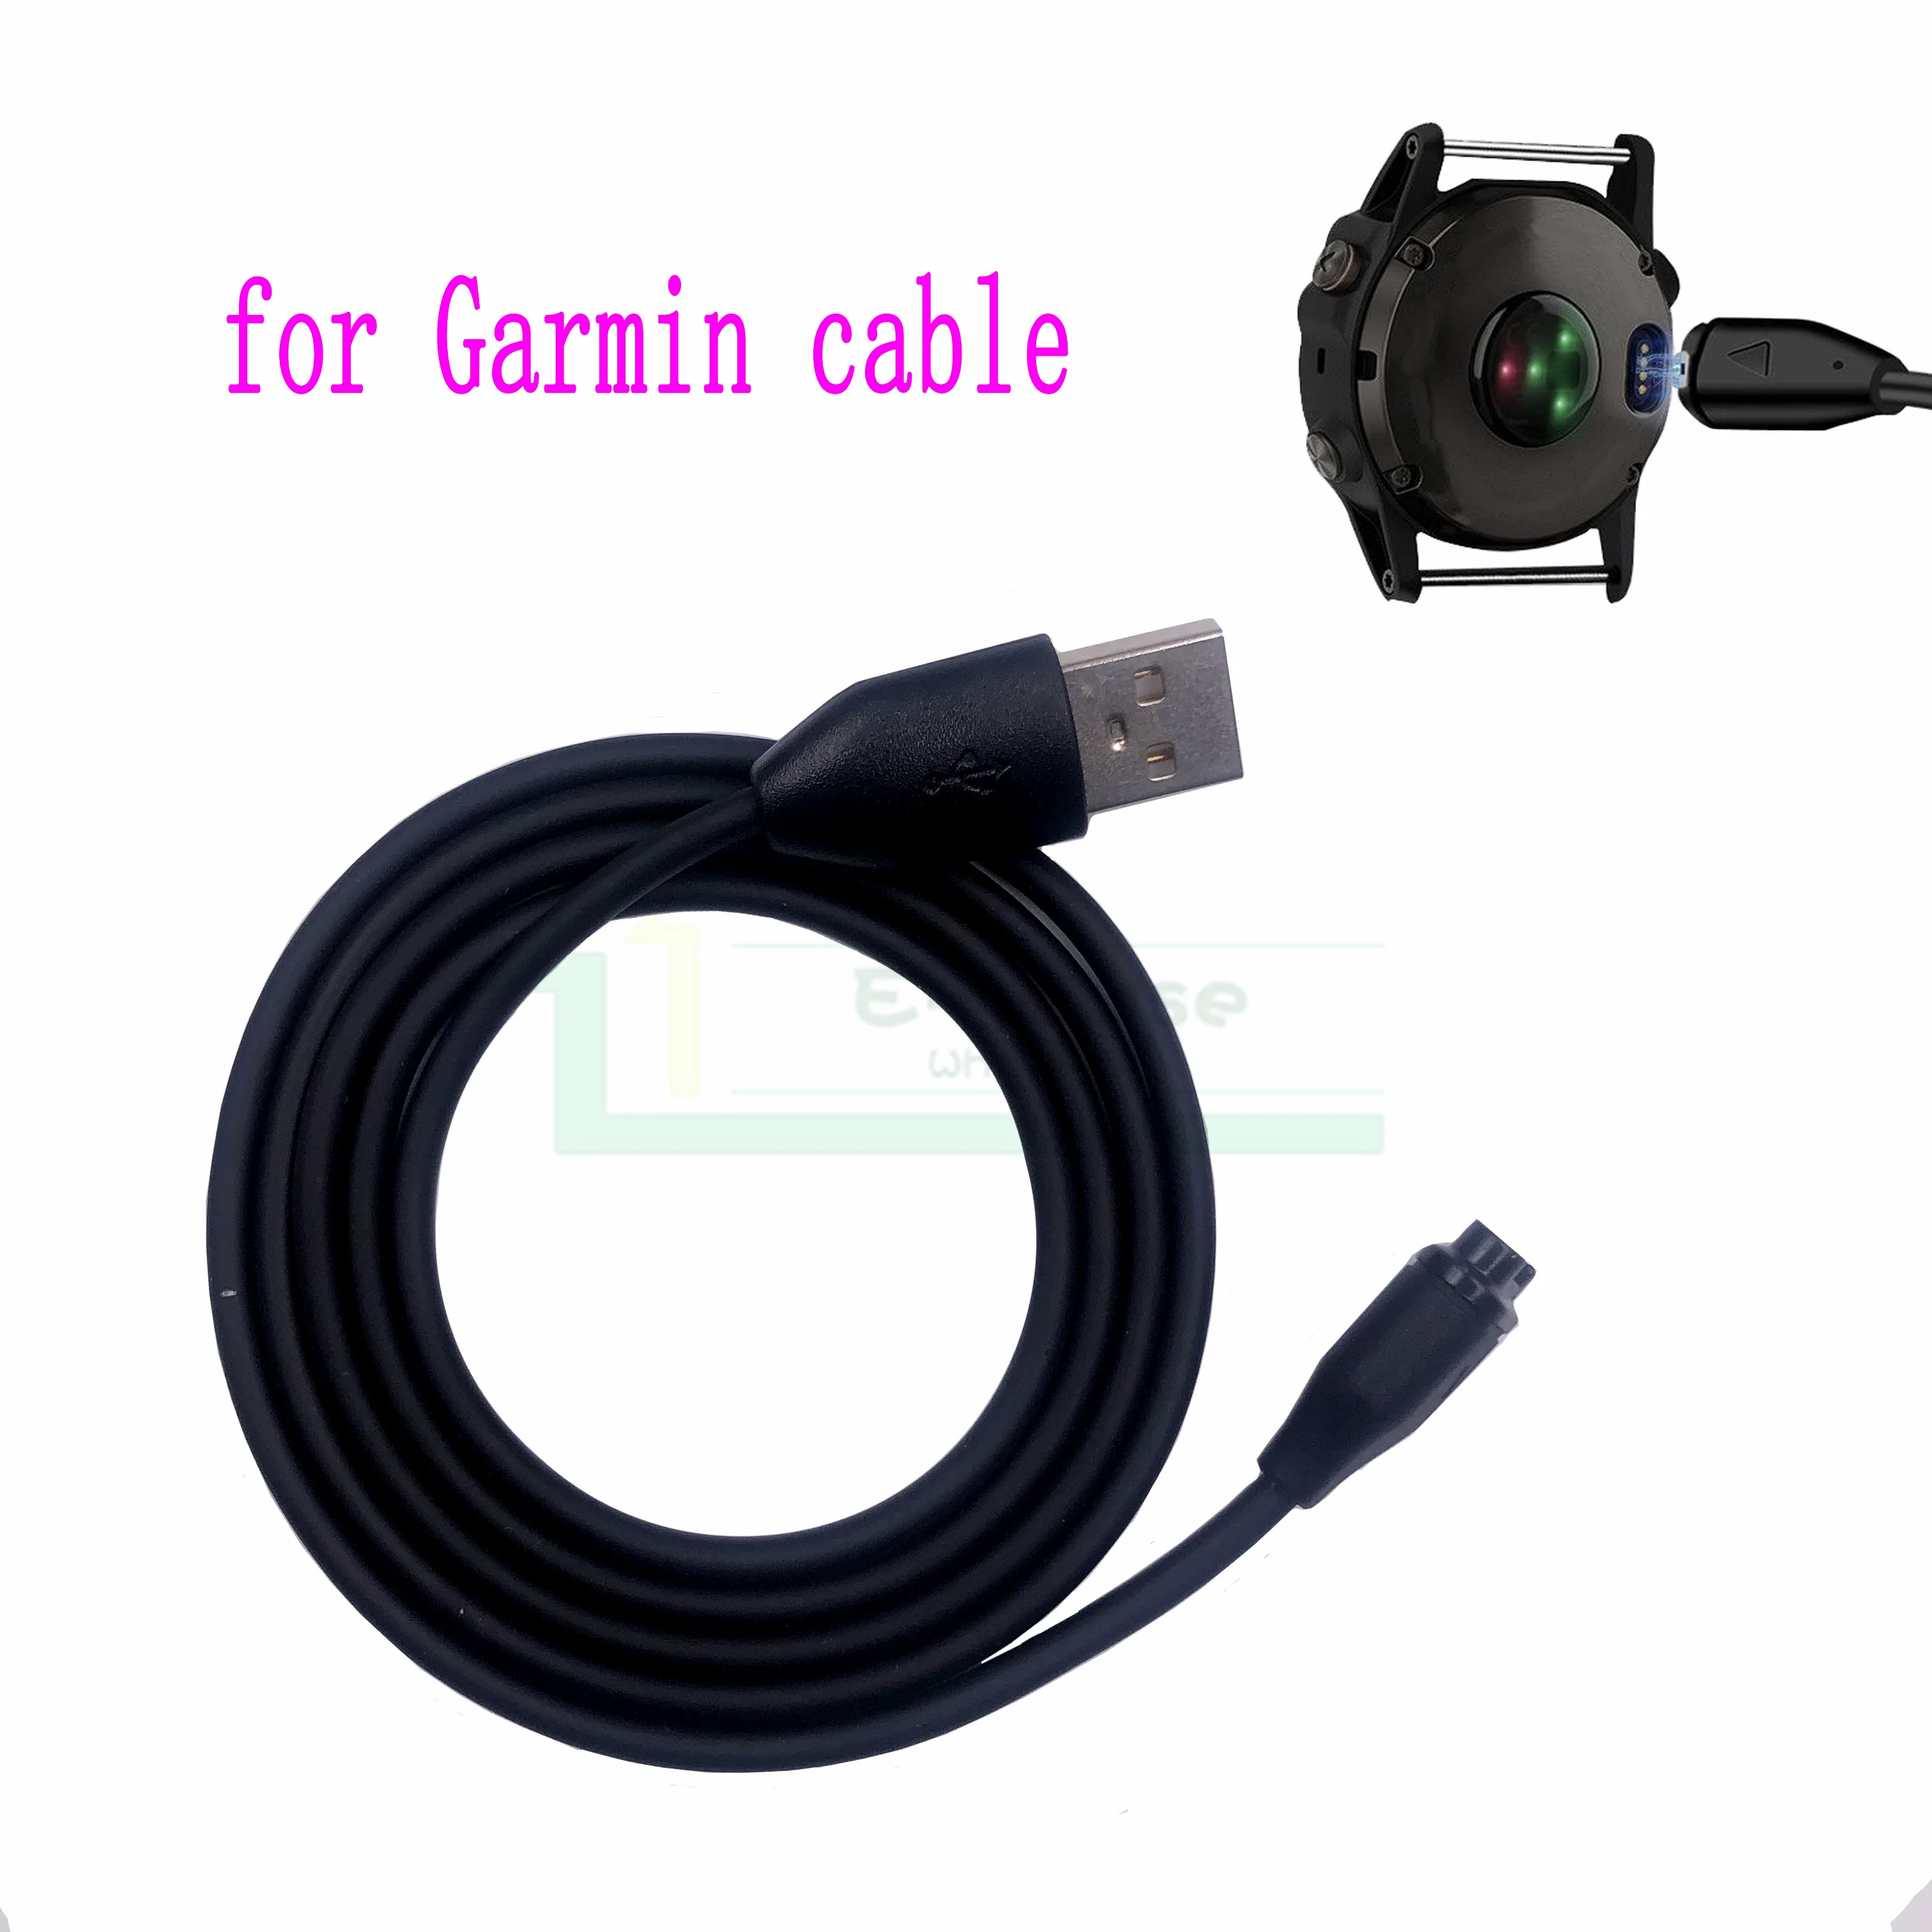 Кабель для зарядки для Garmin fenix 5 x6 магнитный кабель для передачи данных длиной 1 м с сертификатом CE